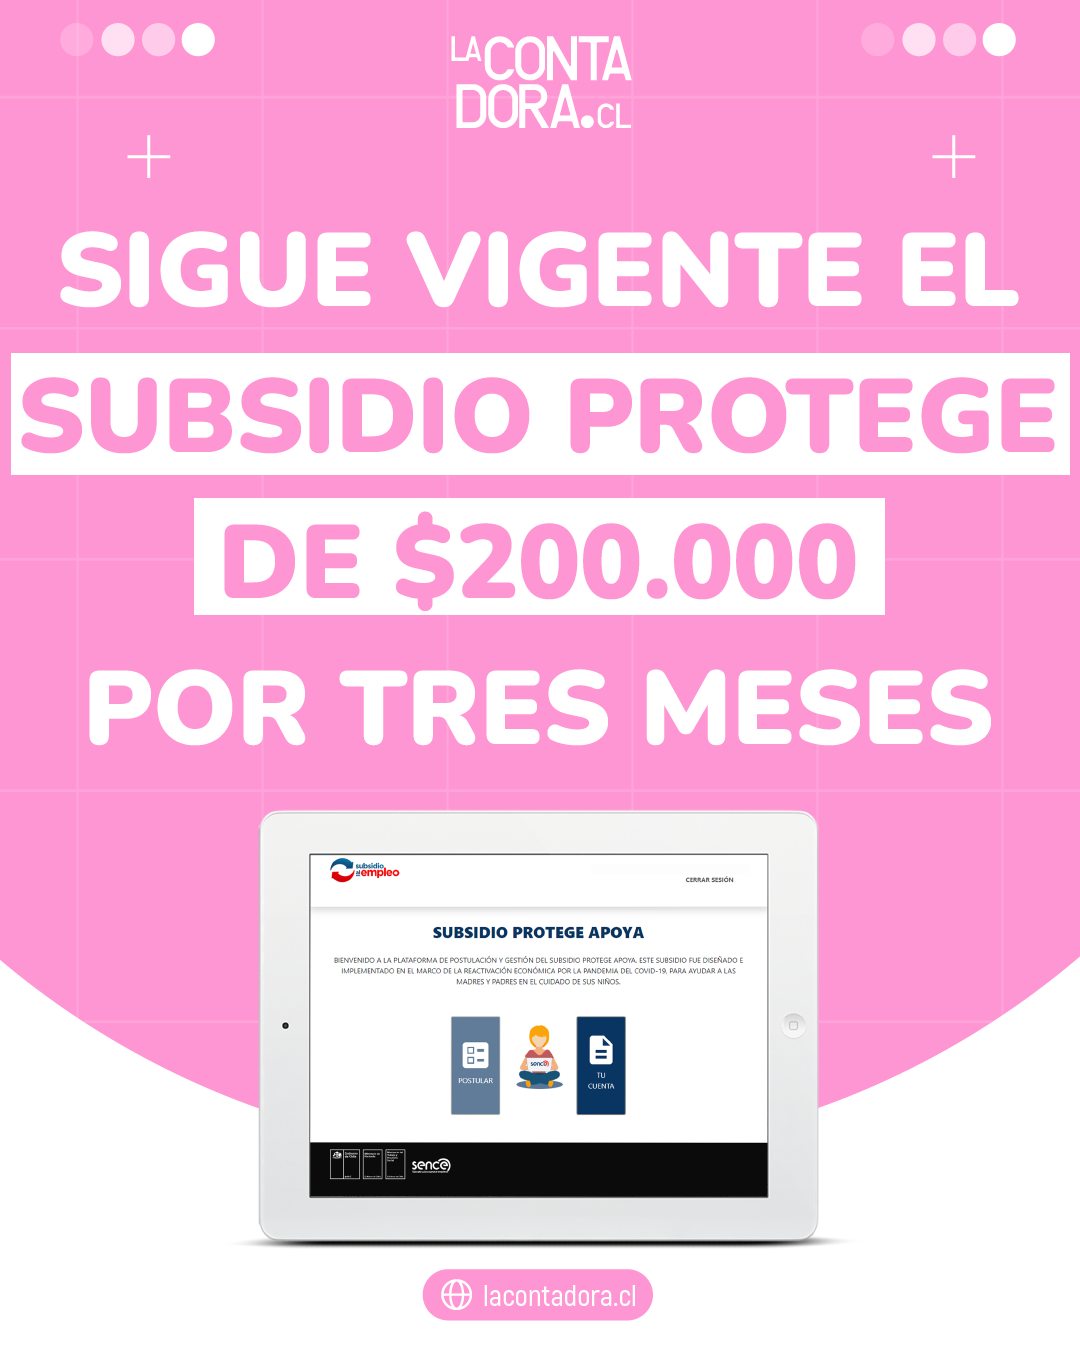 SIGUE VIGENTE EL SUBSIDIO PROTEGE DE $200.000 POR TRES MESES